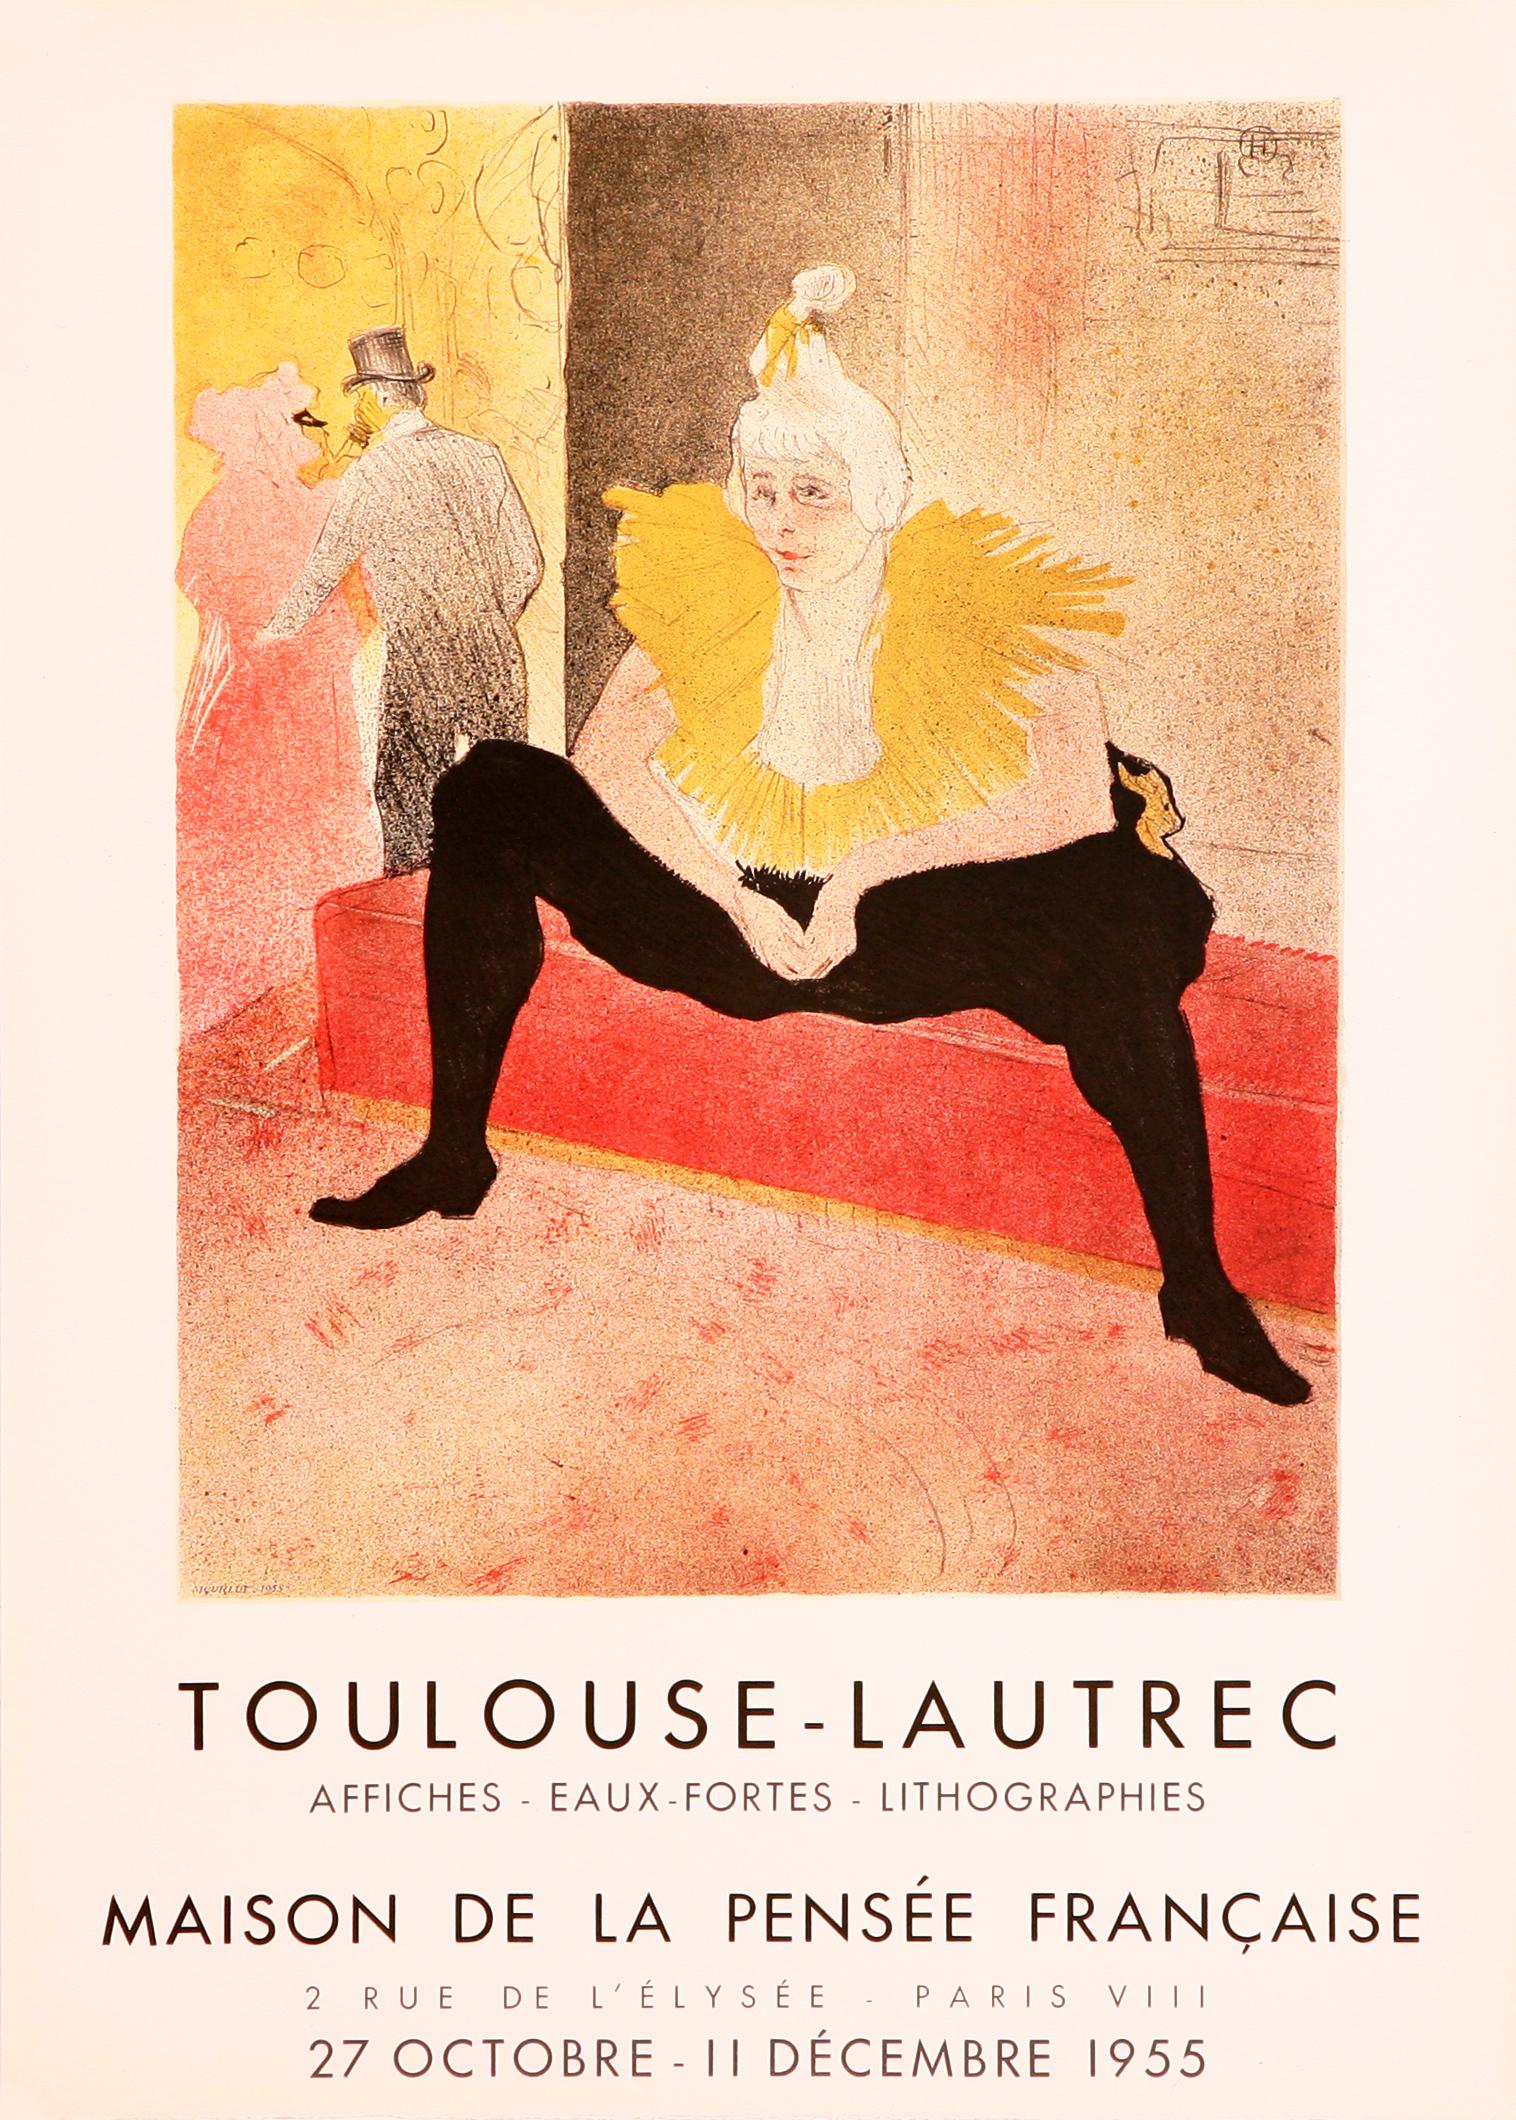 Still-Life Print Henri de Toulouse-Lautrec - La Clownesse assise - Maison de la Pense Francaise, 1955